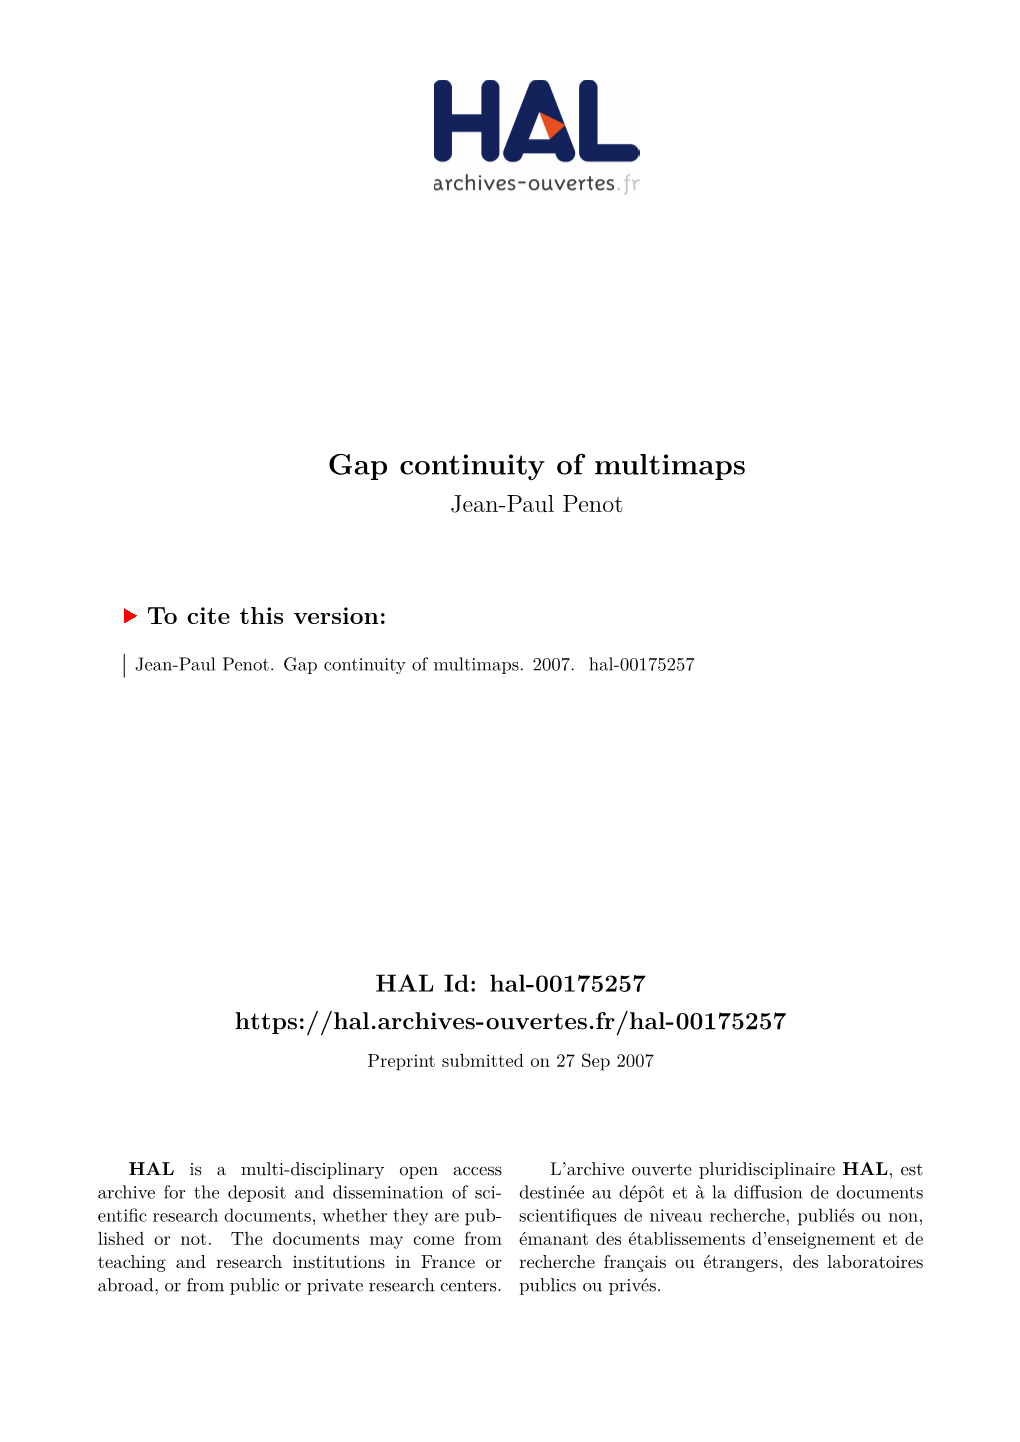 Gap Continuity of Multimaps Jean-Paul Penot